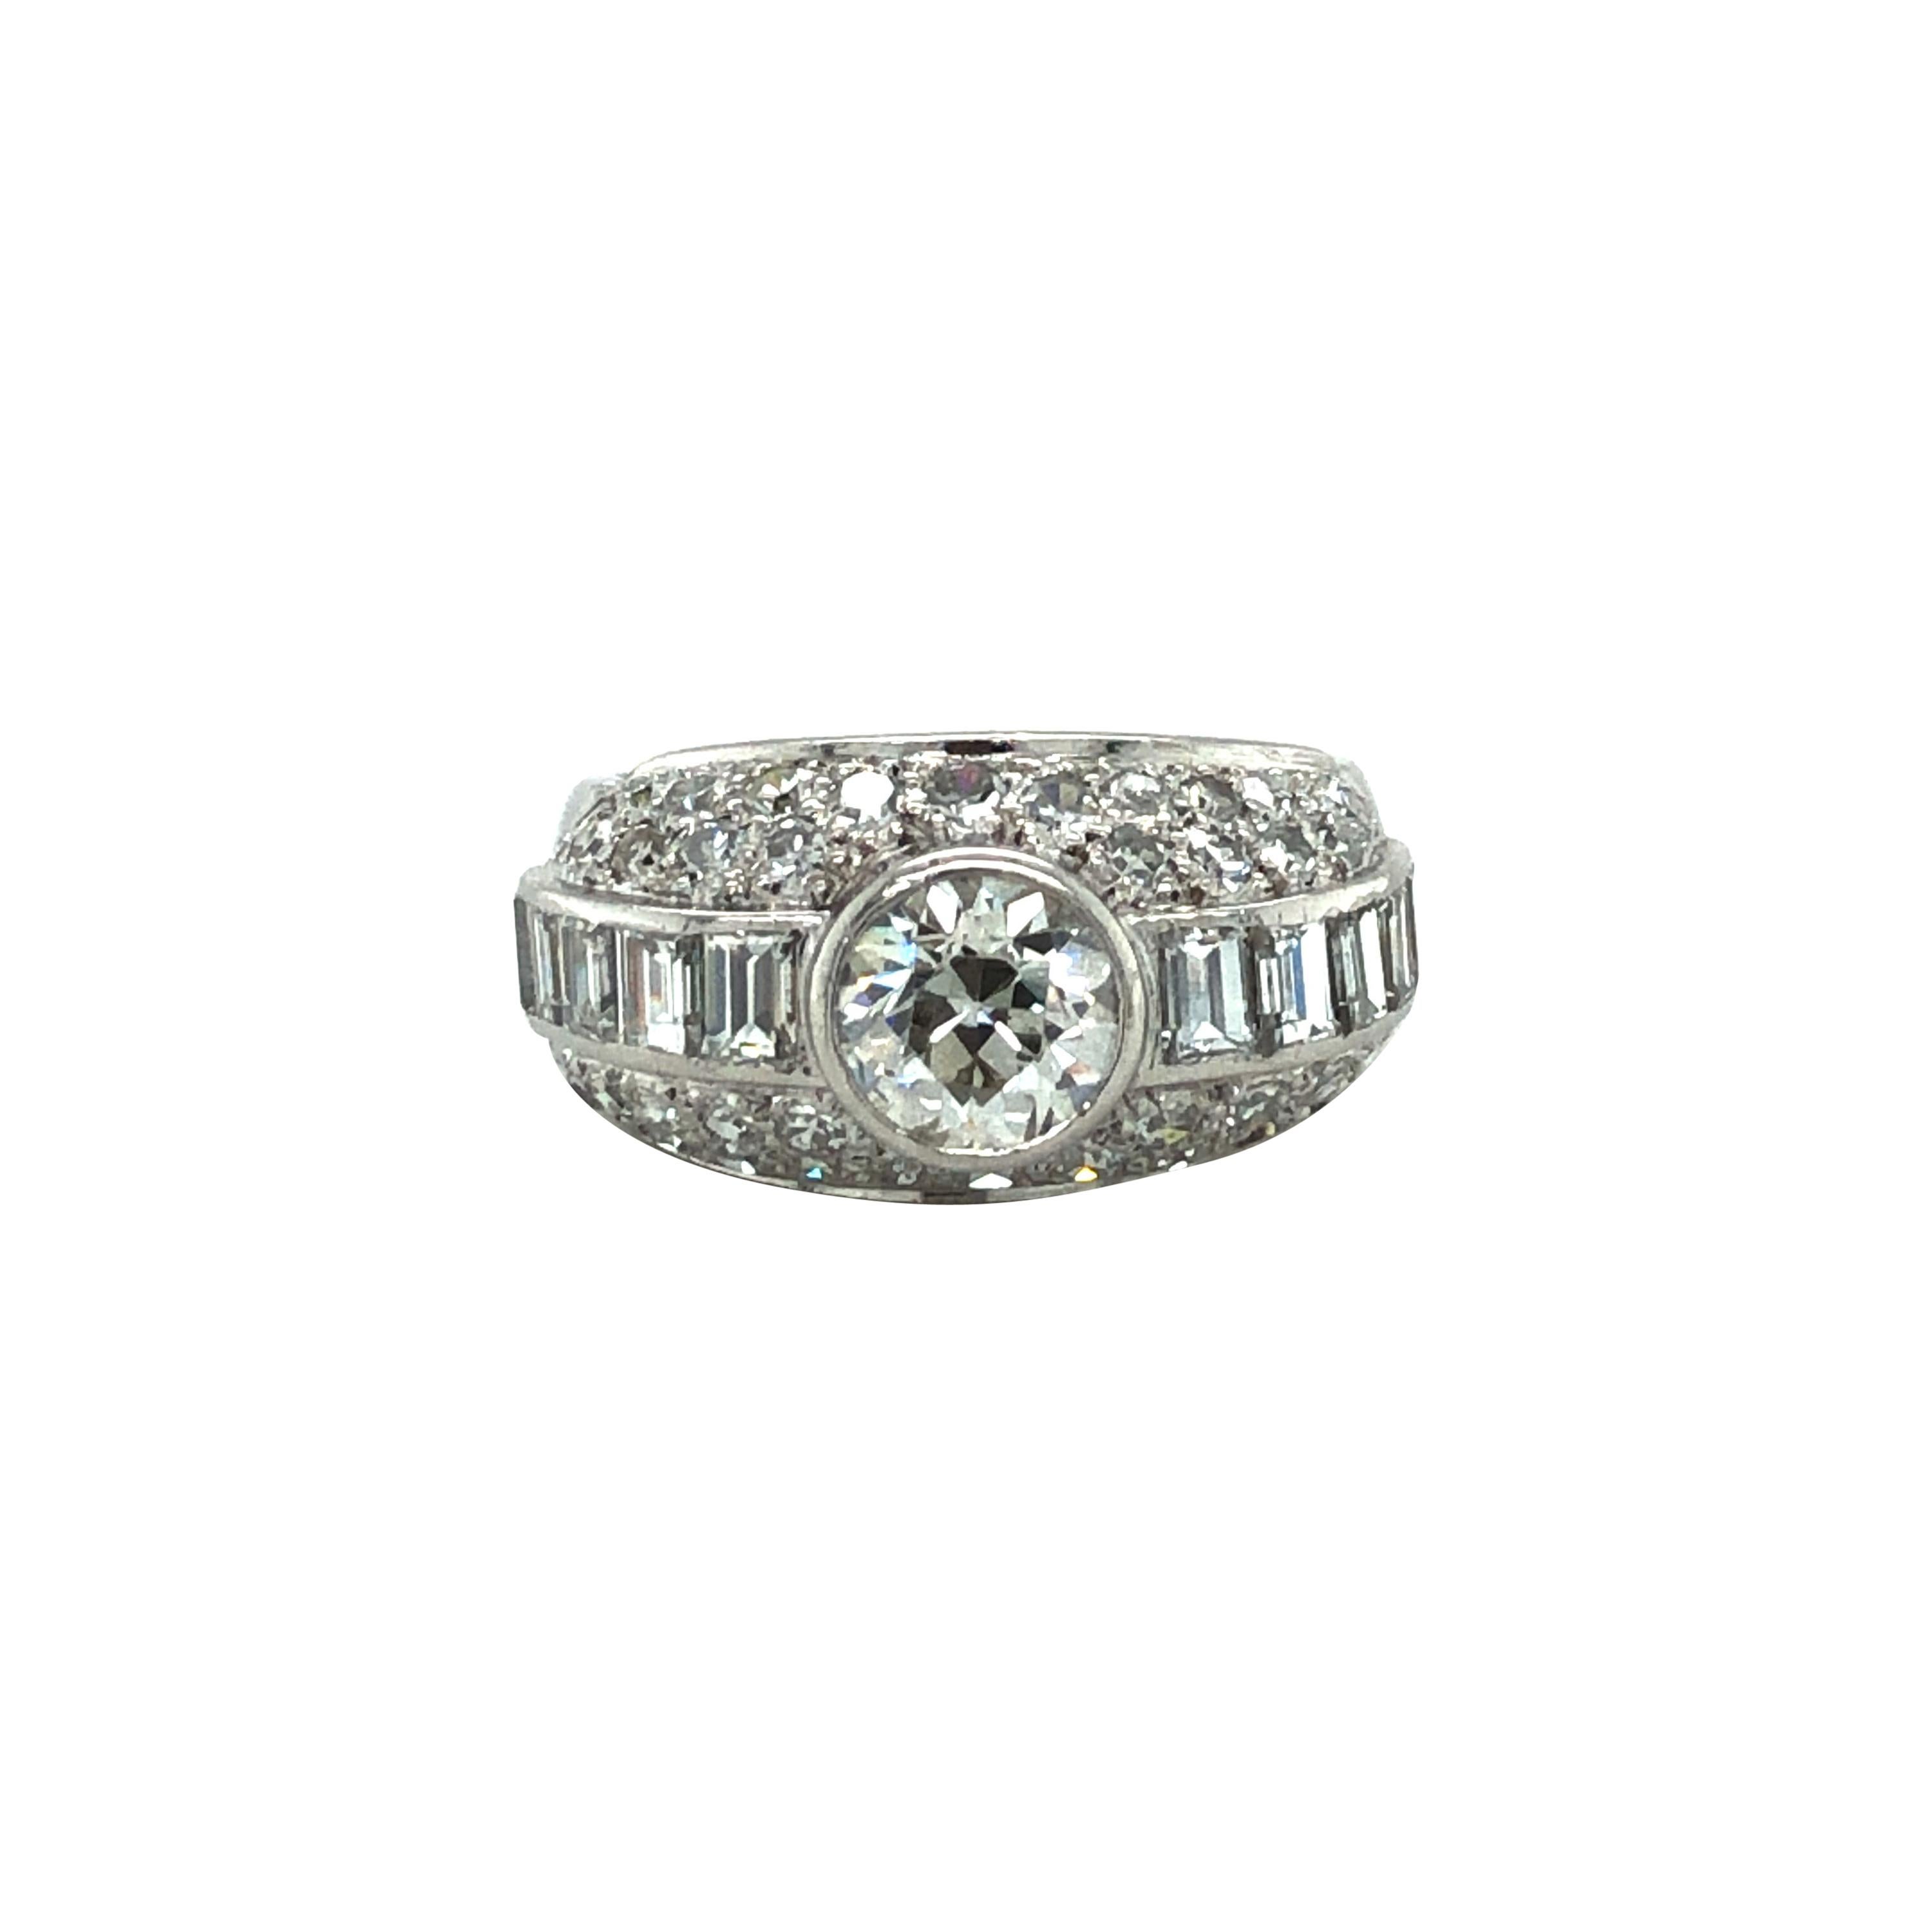 Art Deco Style Diamond Ring in Platinum 950